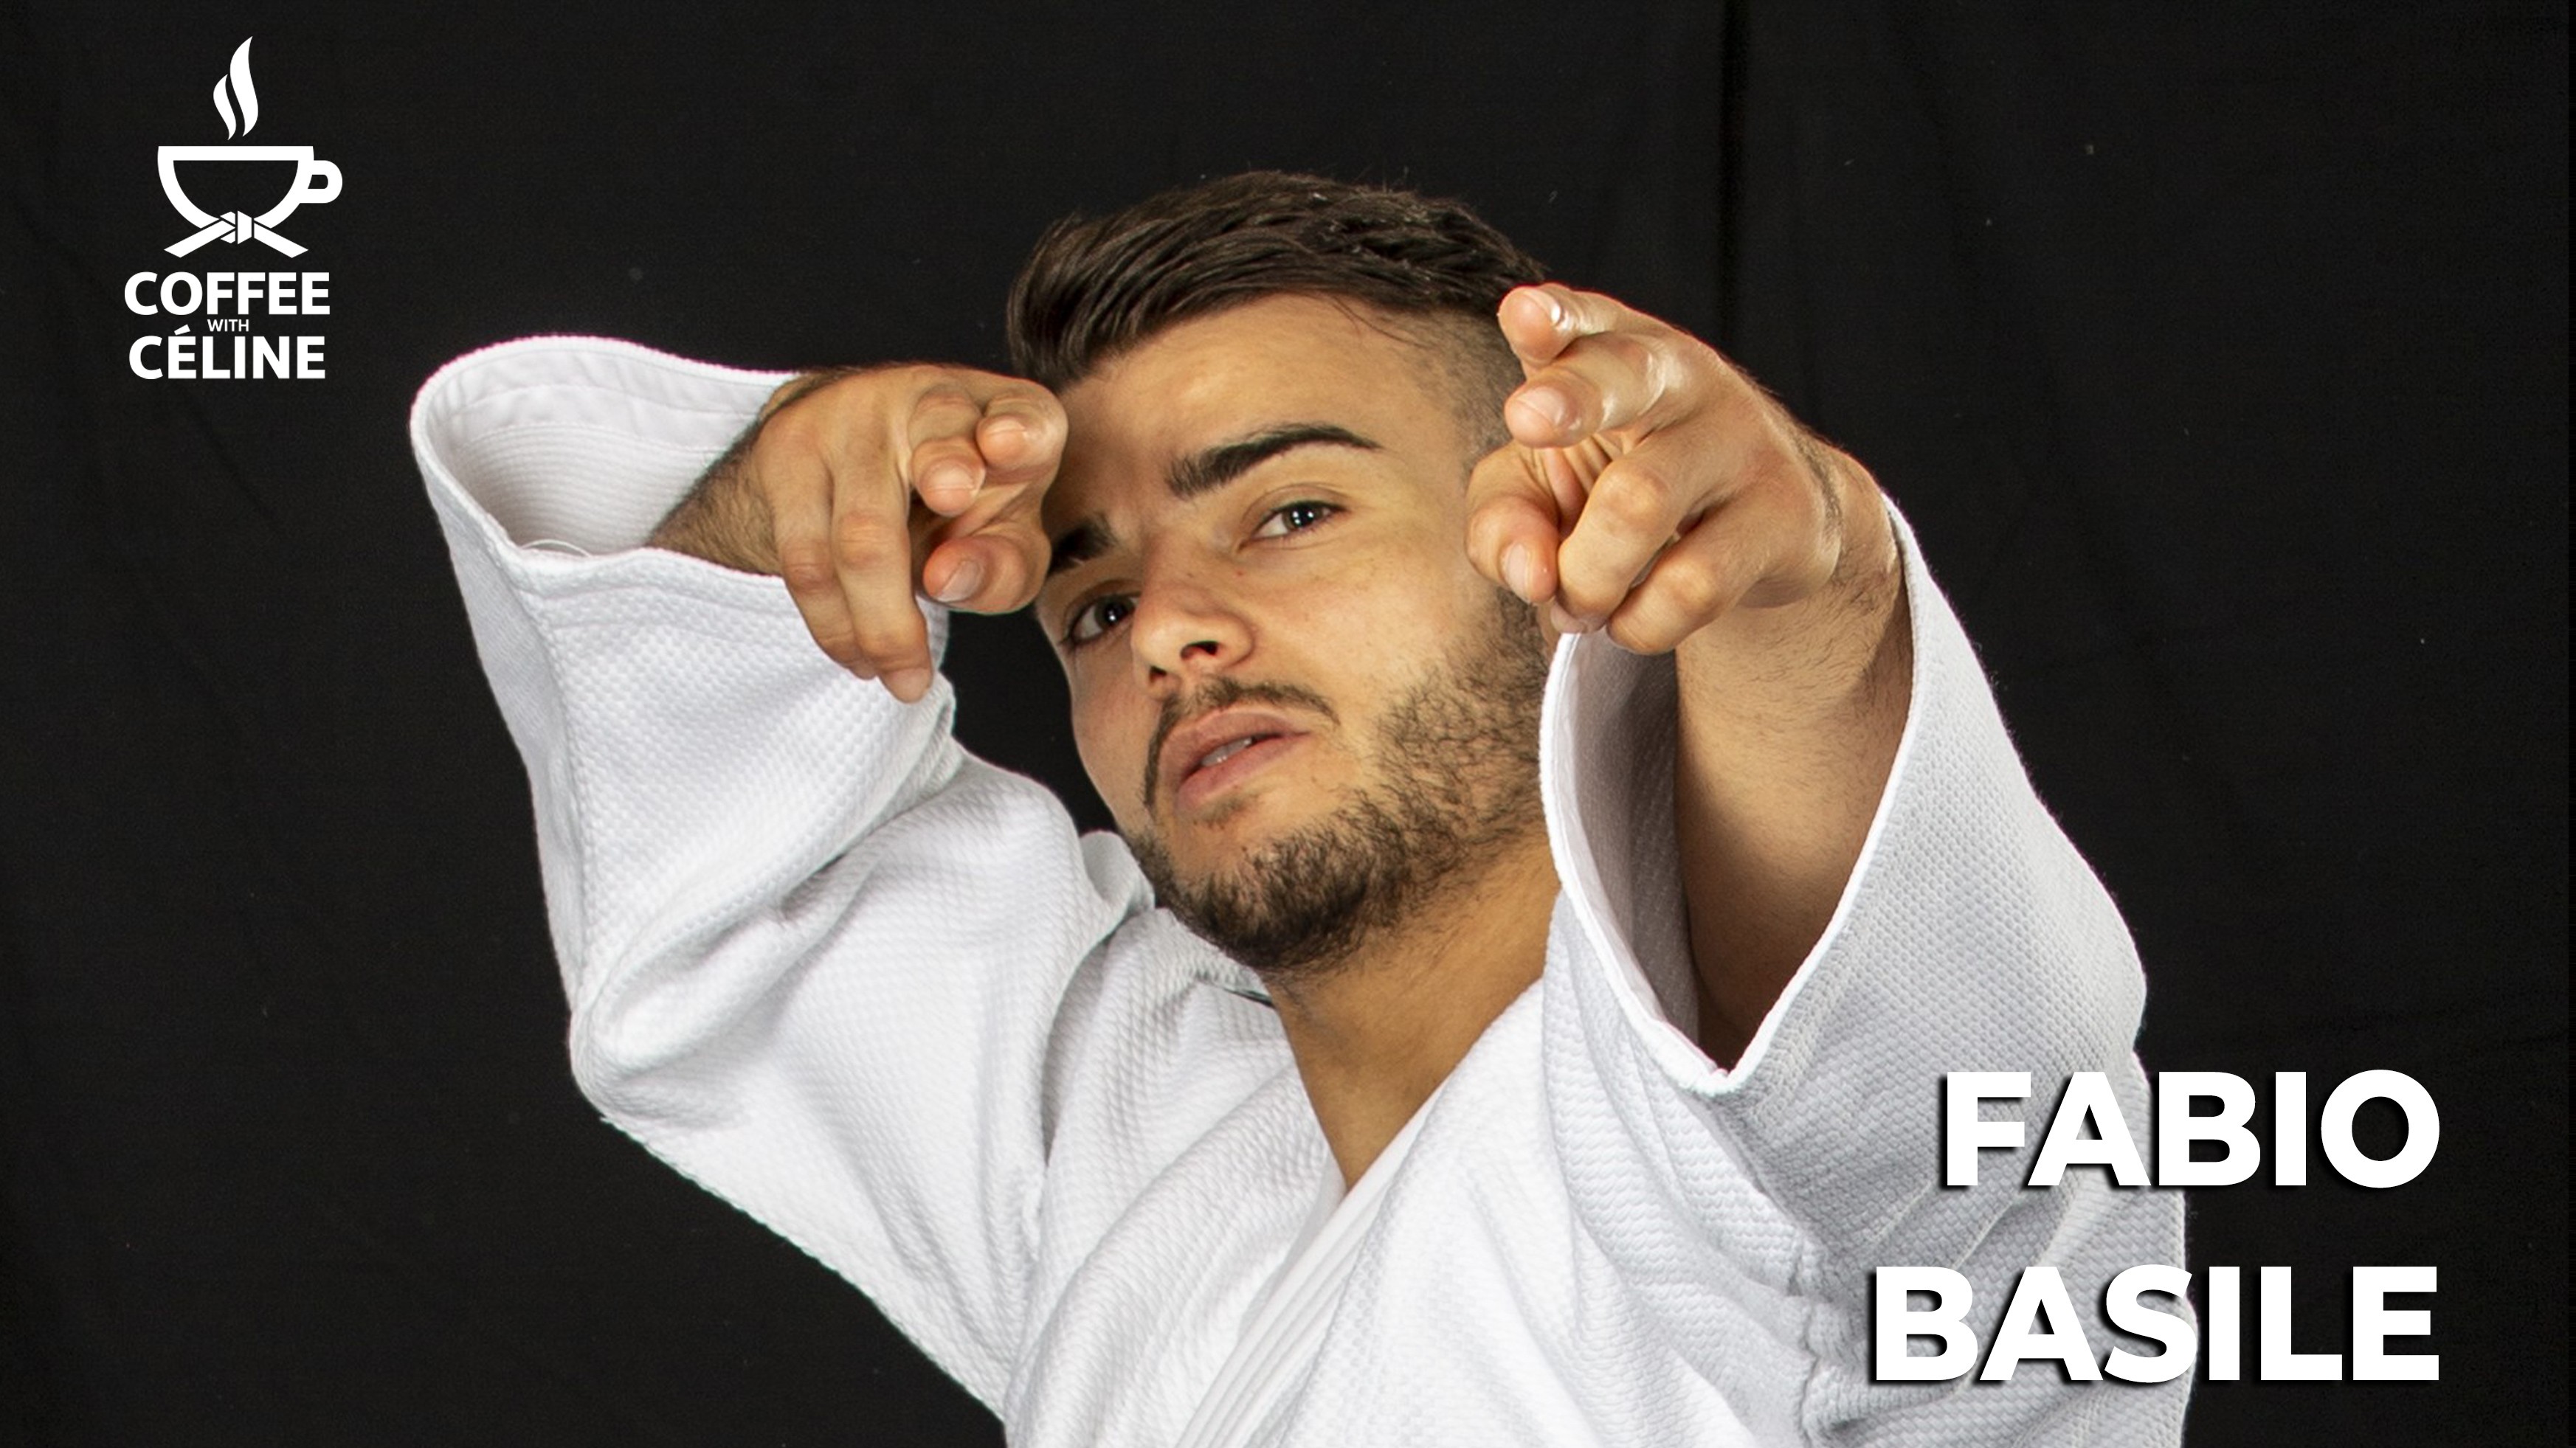 Fabio Basile Training